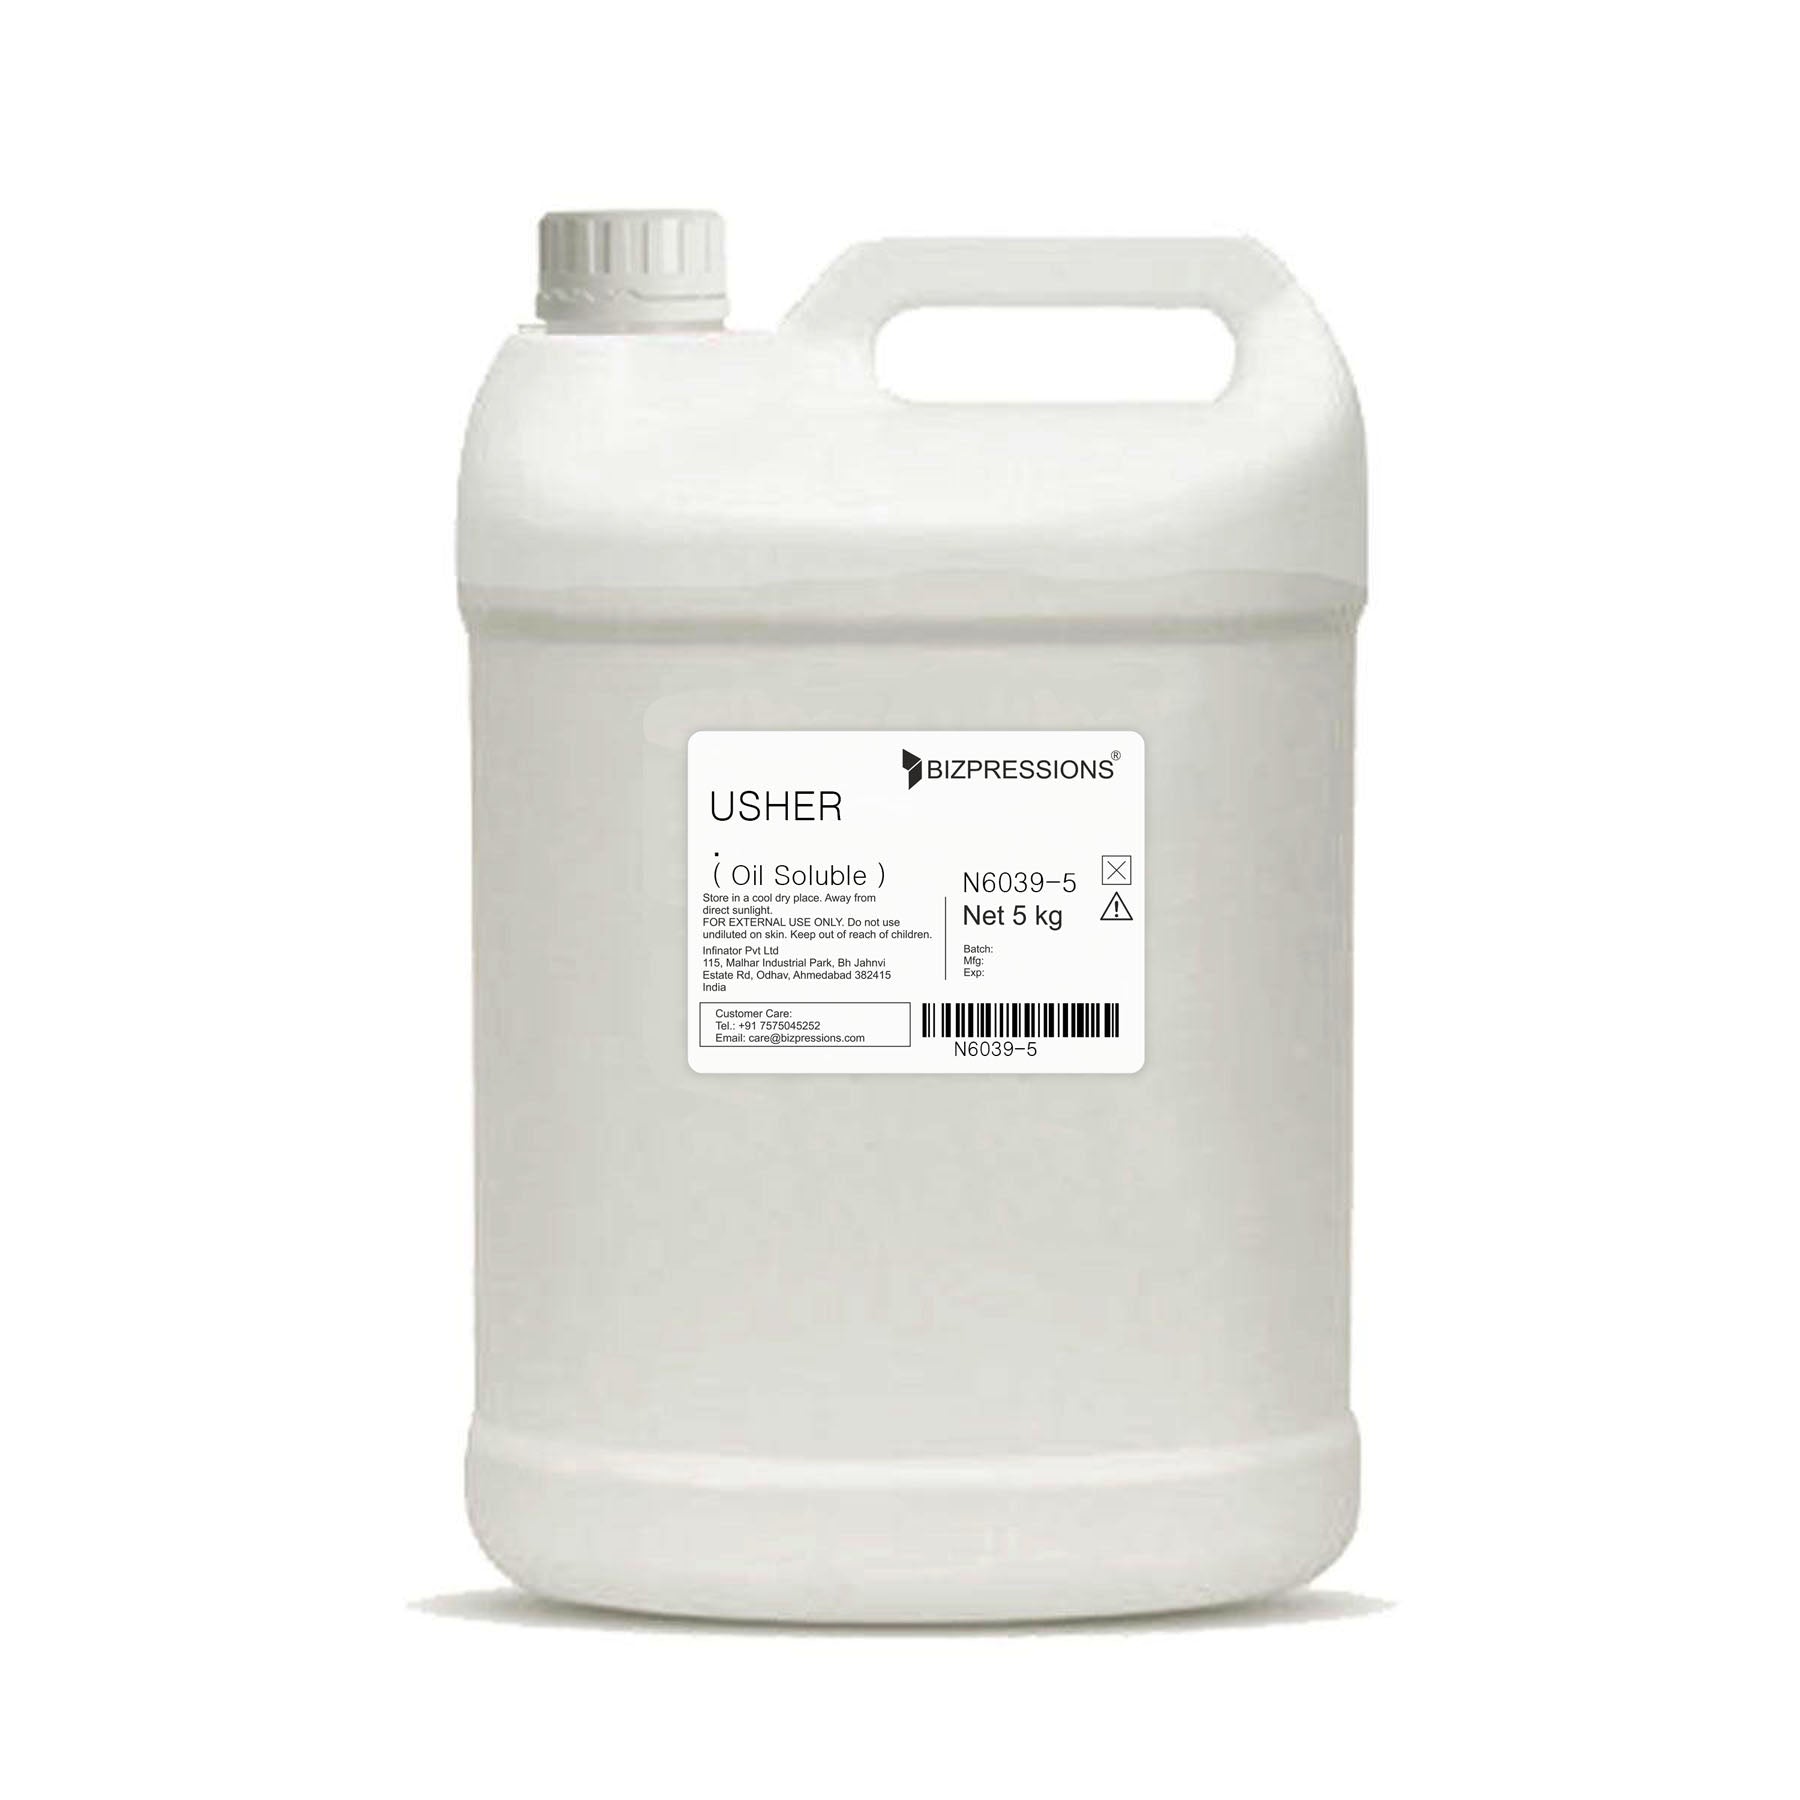 USHER - Fragrance ( Oil Soluble ) - 5 kg